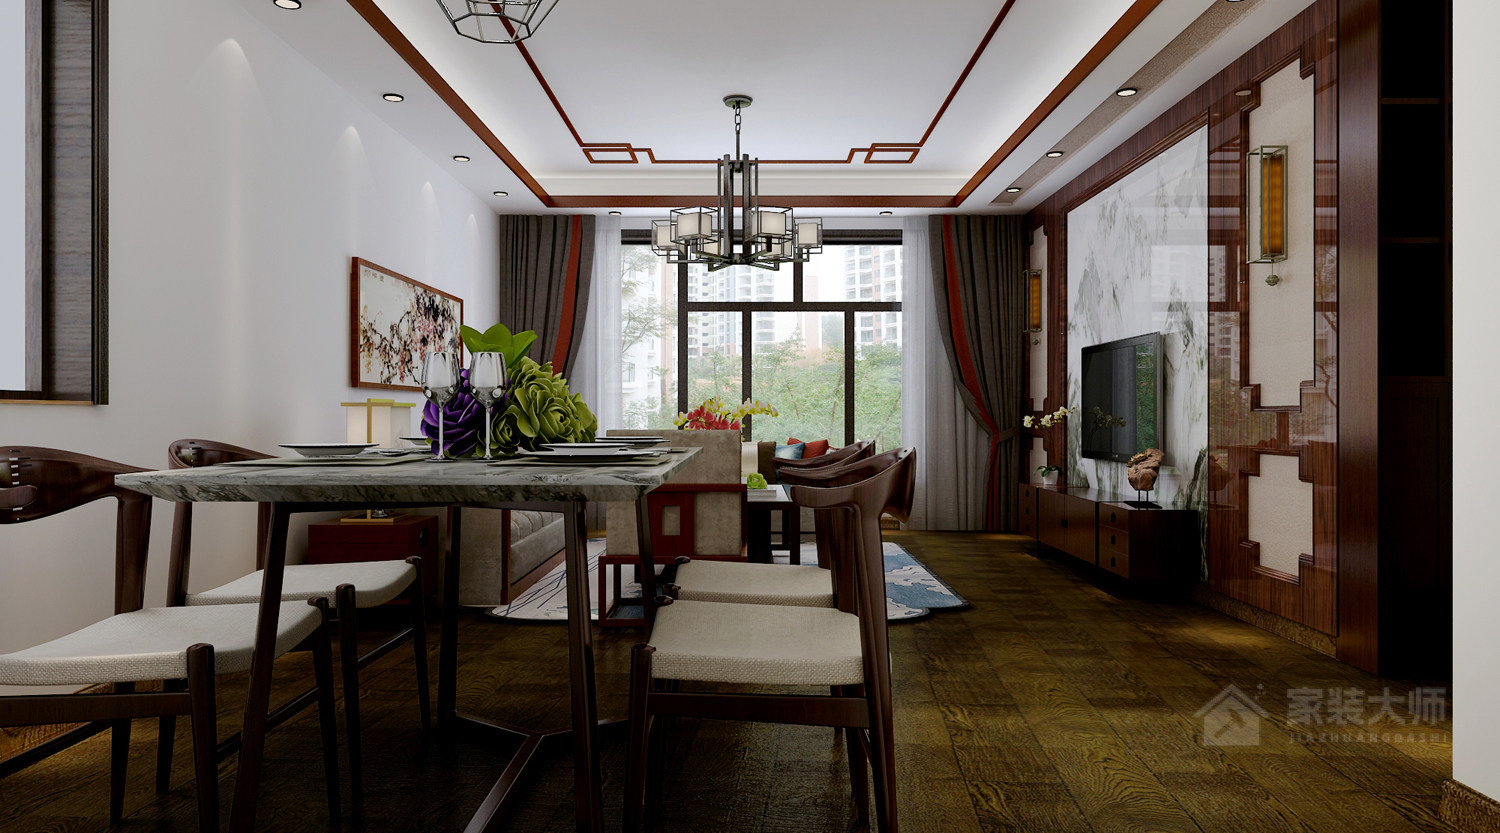 维多利亚 三室两厅一厨两卫一阳新中式风格装修效果图